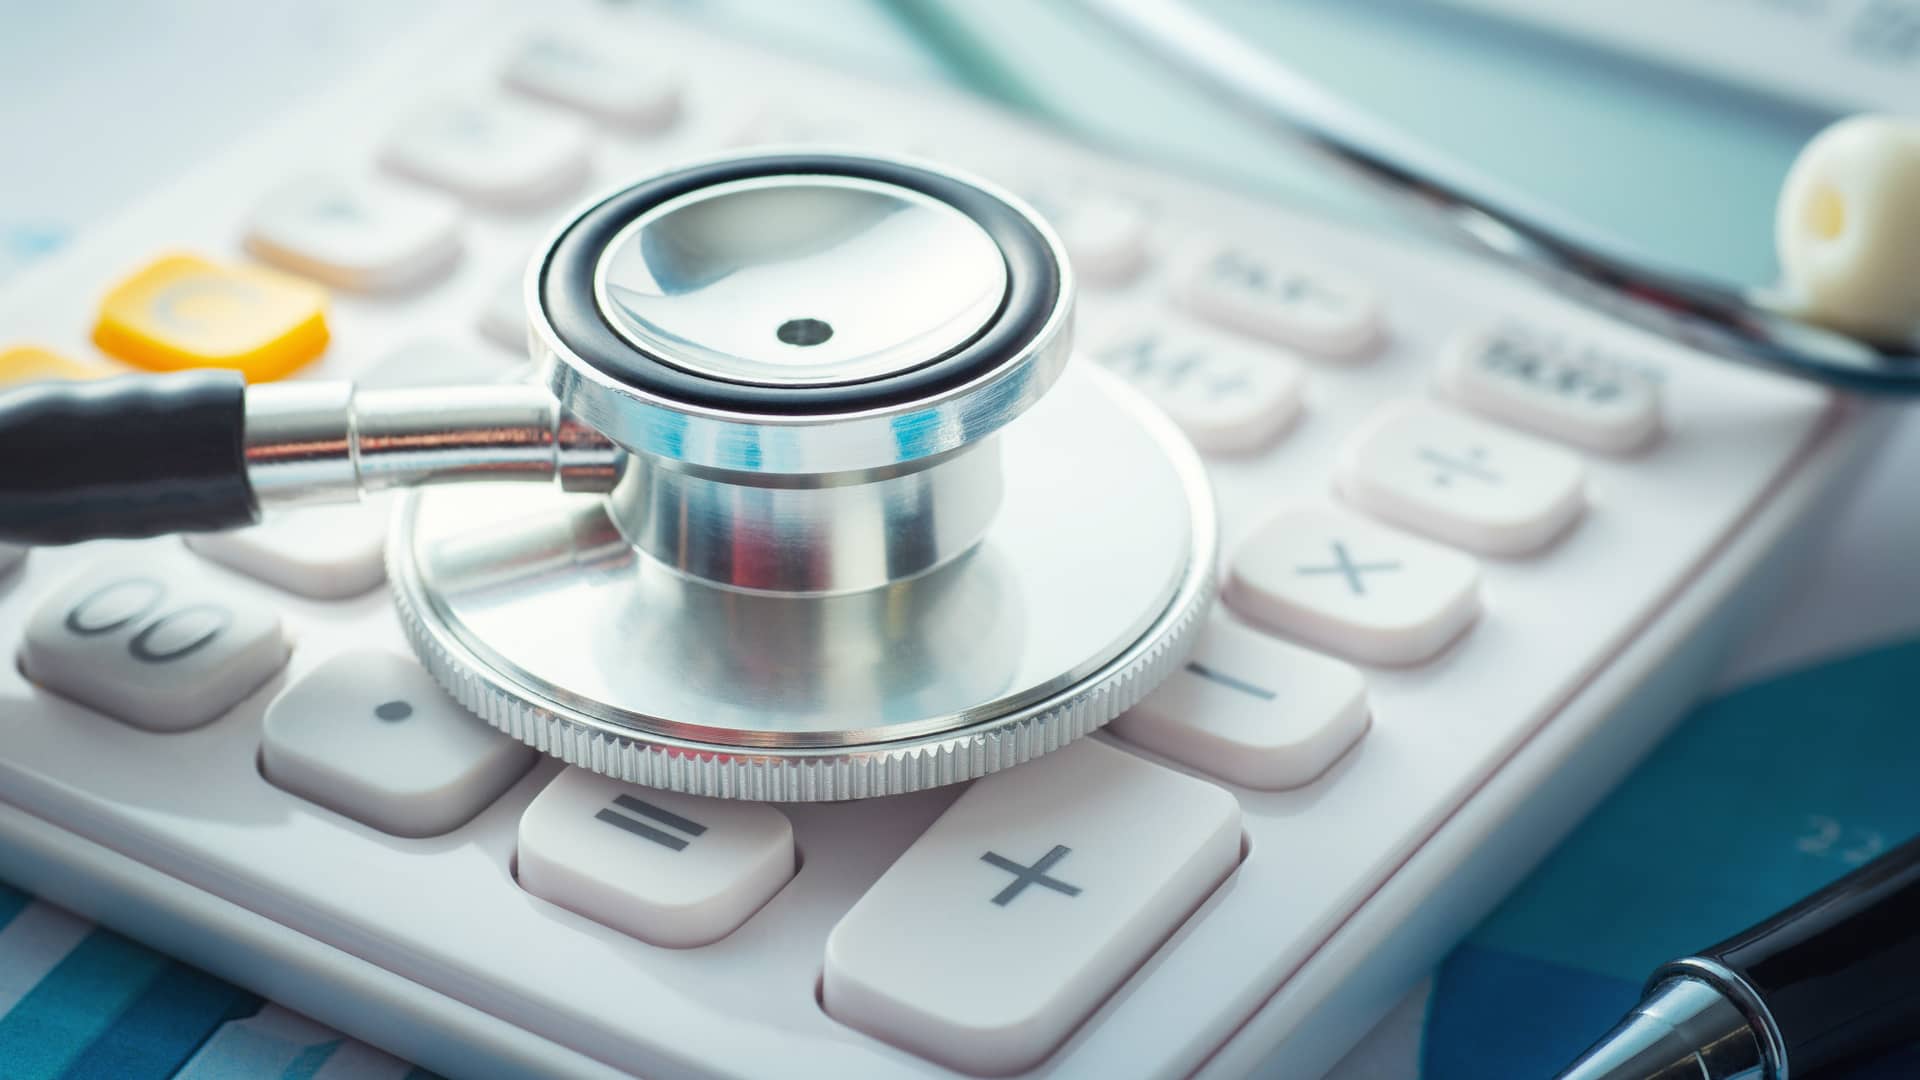 Detalle de estetoscopio sobre calculadora representa la existencia de crowdfundings con fines nobles como el pago de deudas médicas